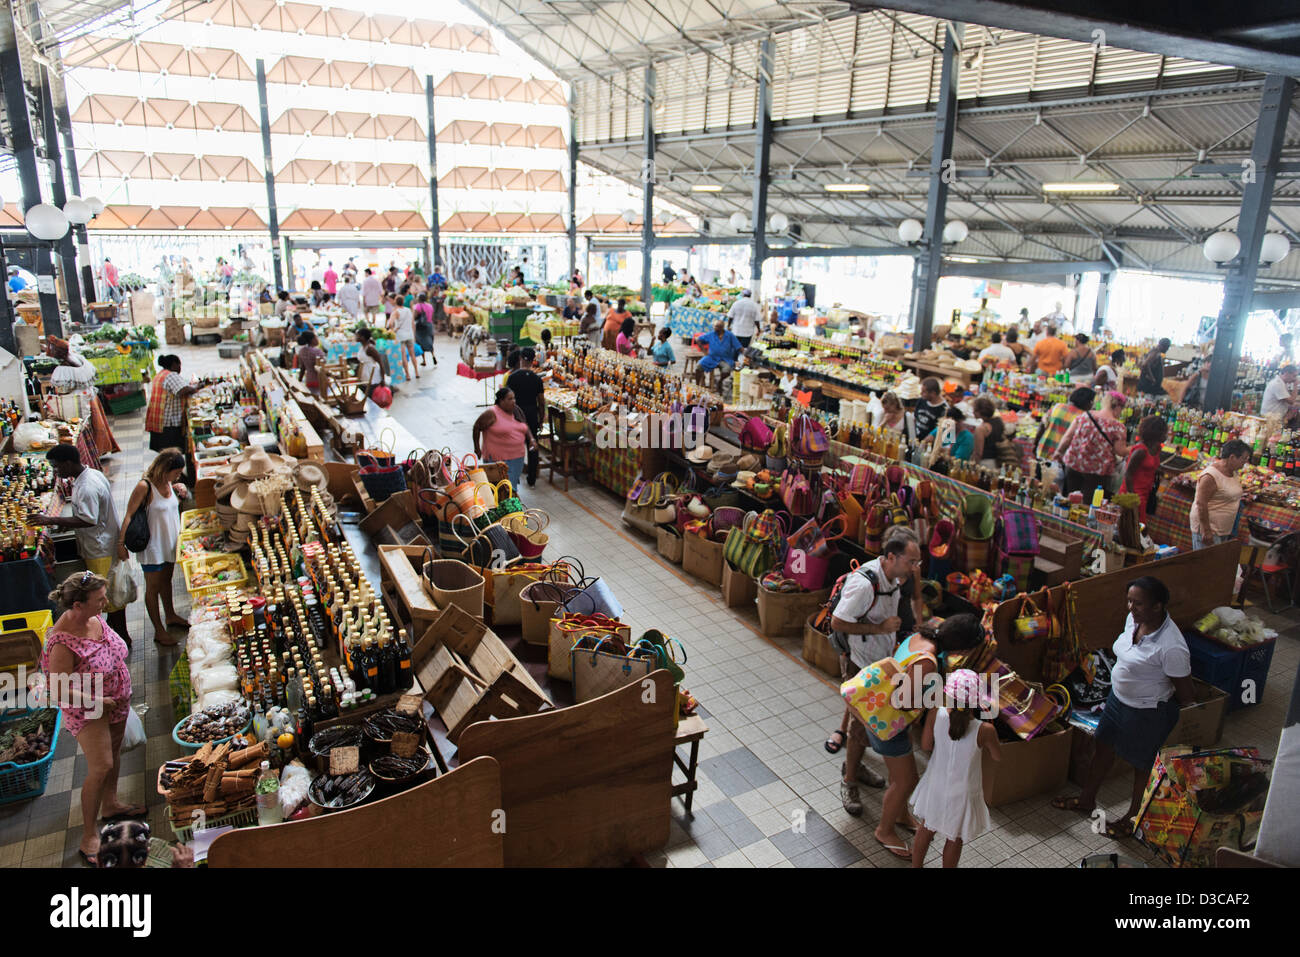 Fort de France market, marché de fort de france, Martinique Island, Lesser Antilles,  Caribbean Sea, France Stock Photo